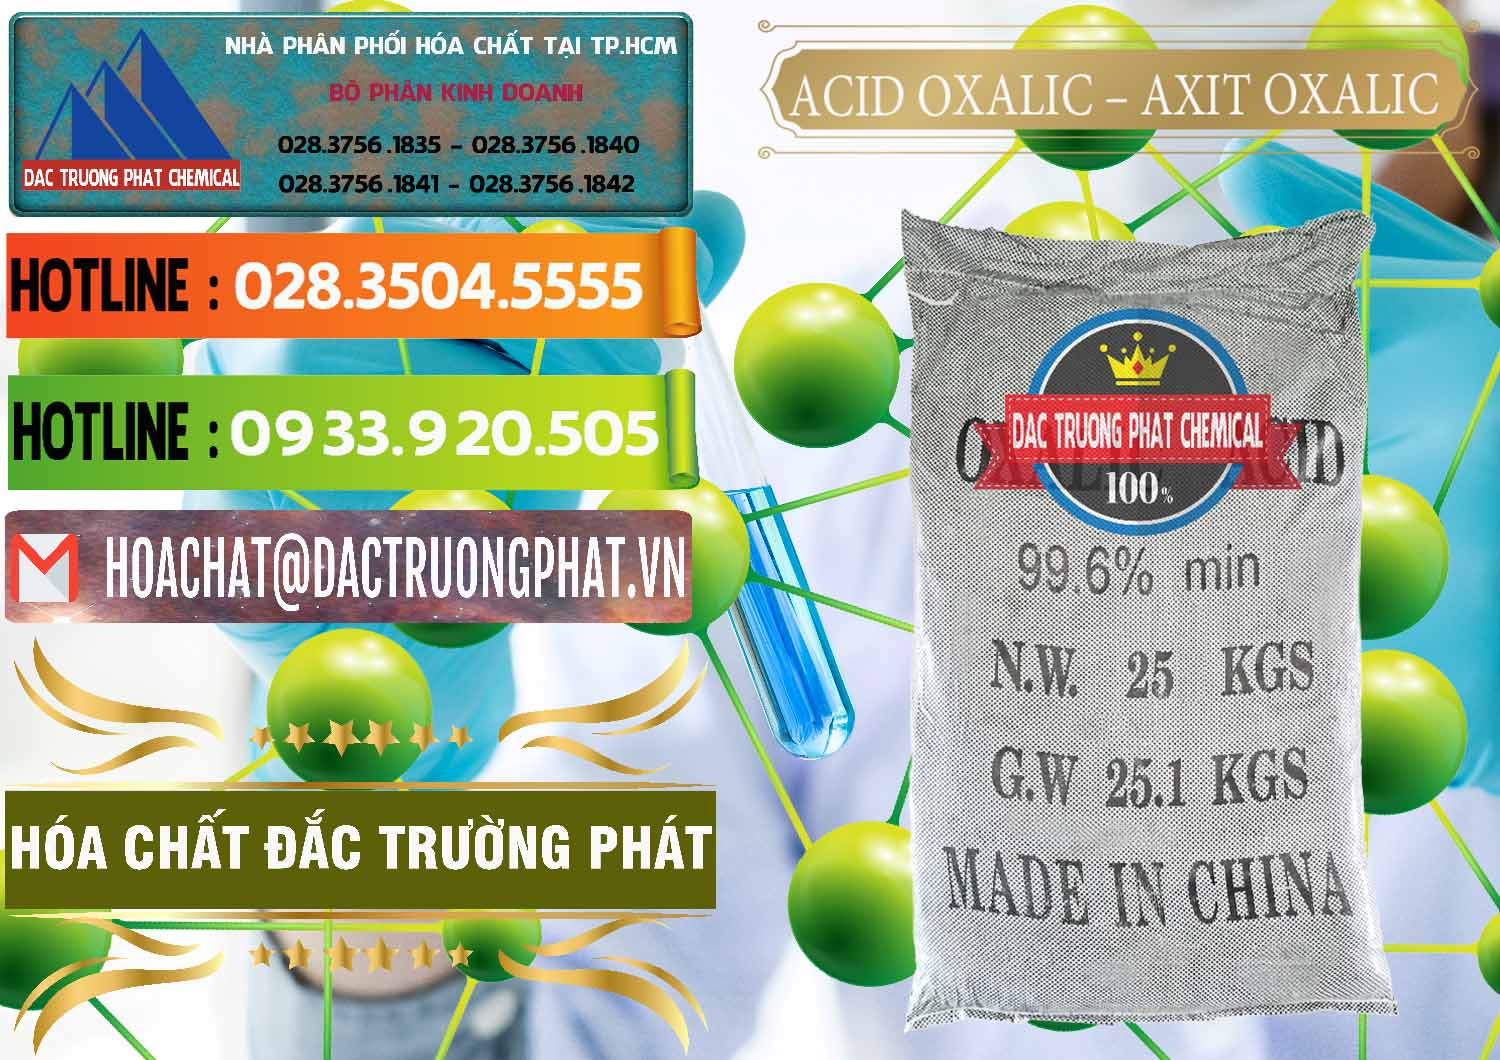 Cty chuyên cung ứng & bán Acid Oxalic – Axit Oxalic 99.6% Trung Quốc China - 0014 - Công ty bán _ phân phối hóa chất tại TP.HCM - cungcaphoachat.com.vn